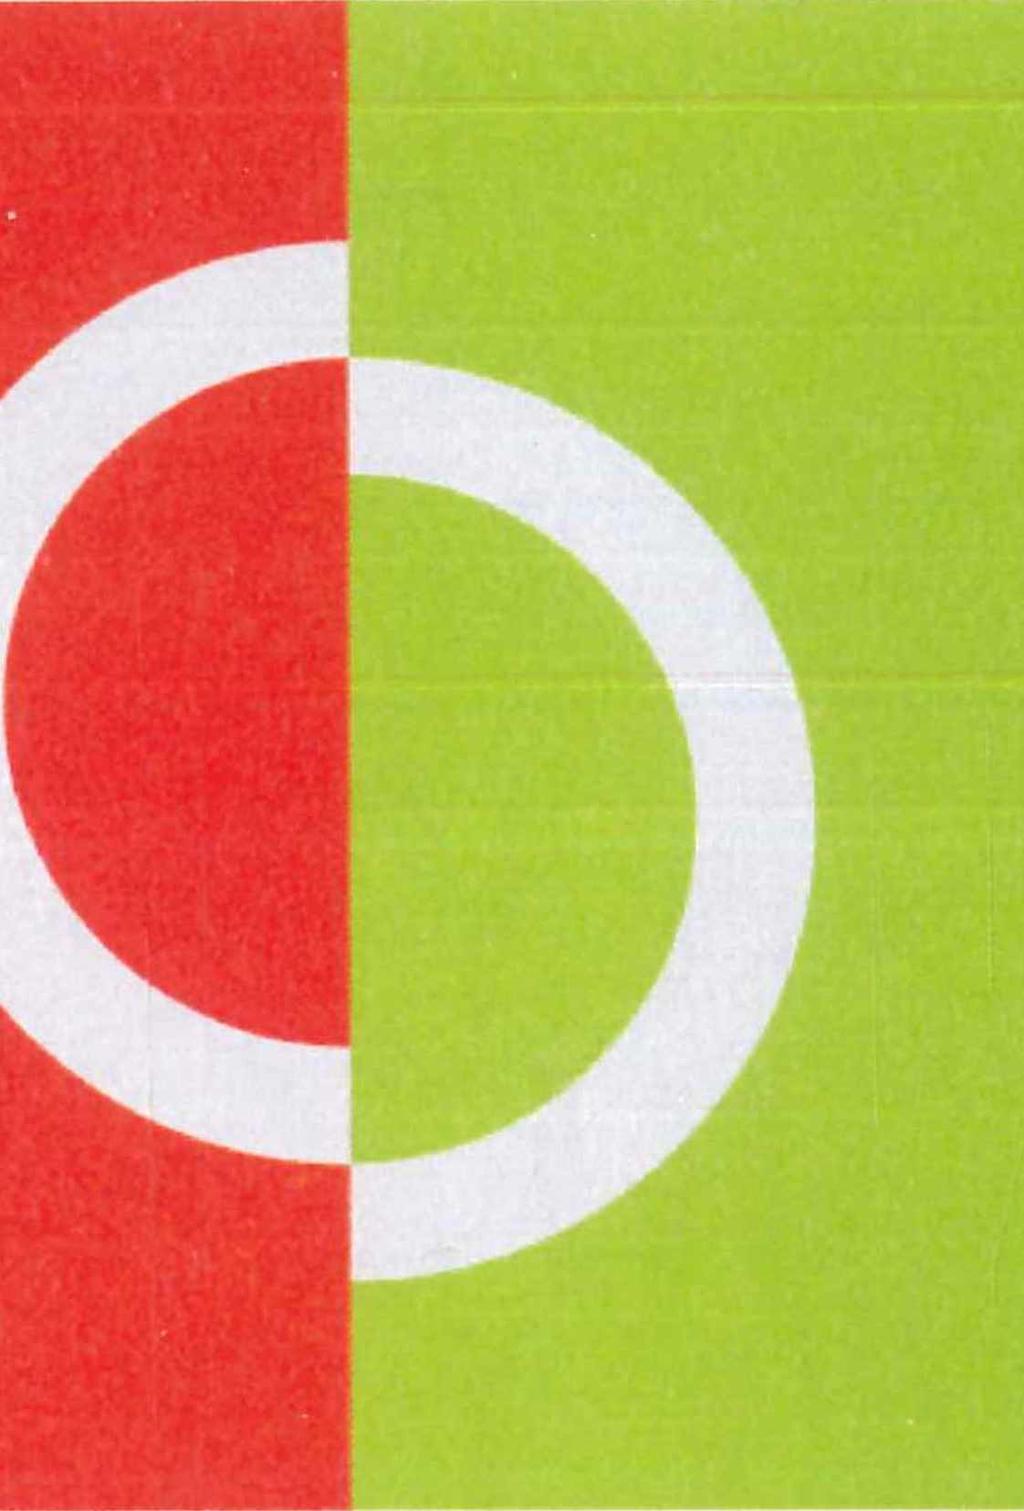 3: Sim ultaner Farbkontrast Ein grauer Halbring erscheint auf rotem Untergrund grünlich, auf